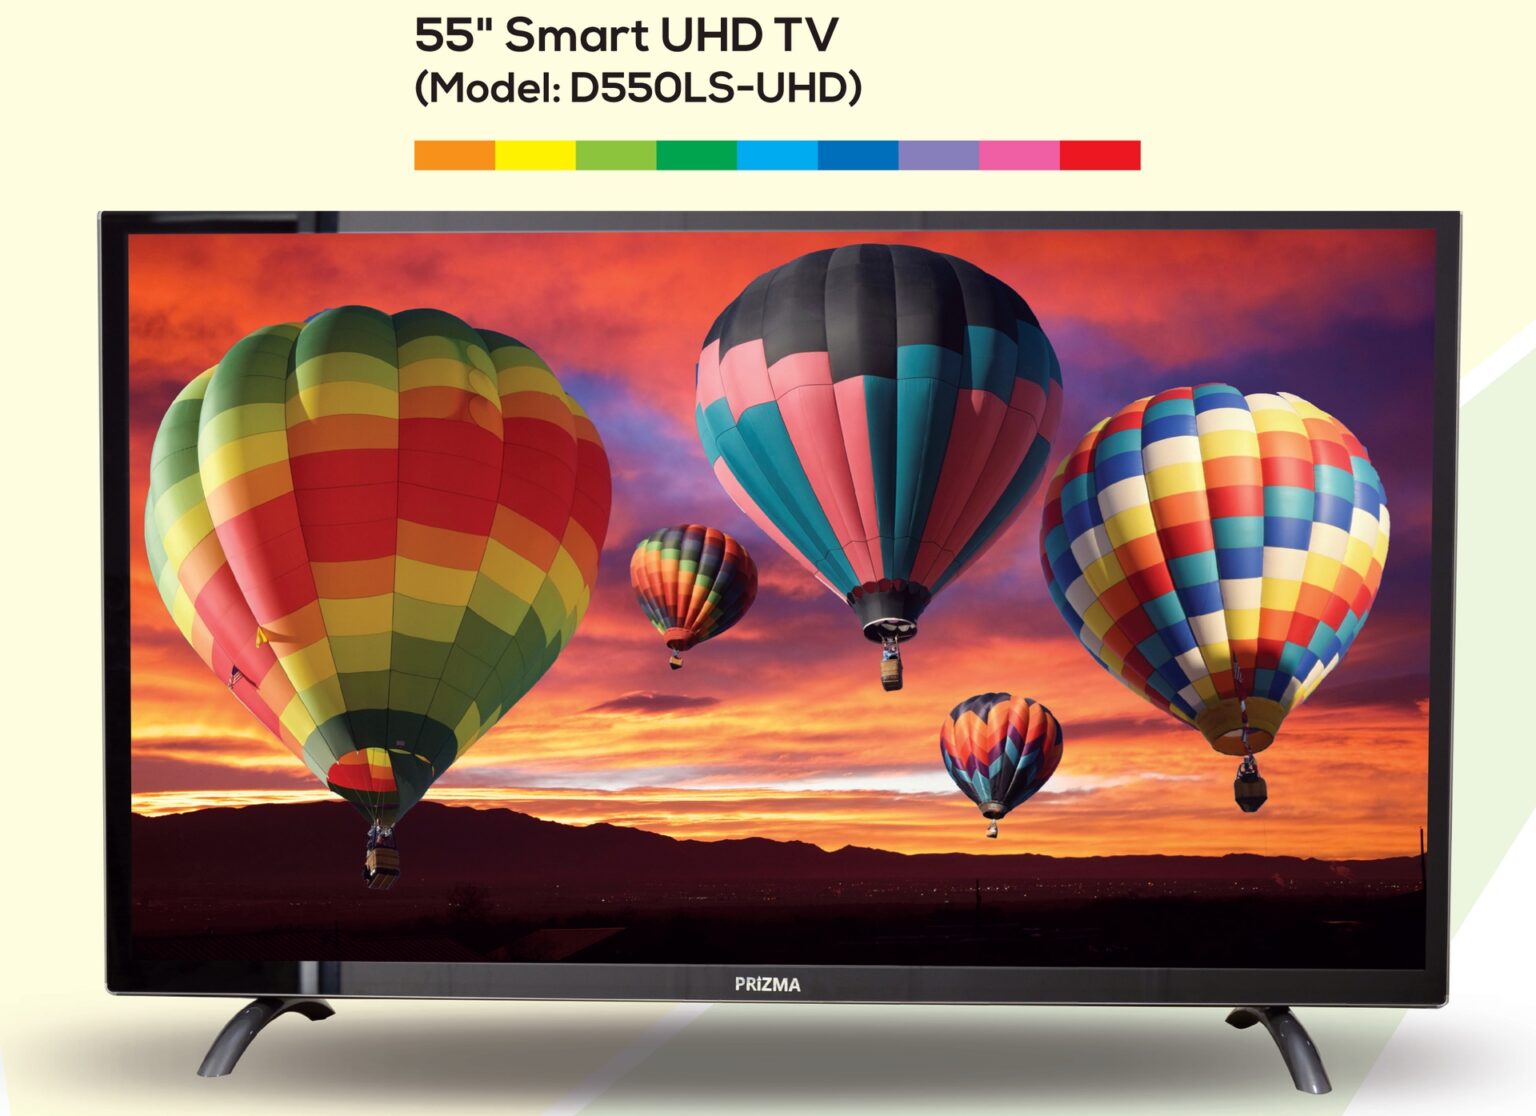 55 inch Smart UHD TV – D550LS-UHD